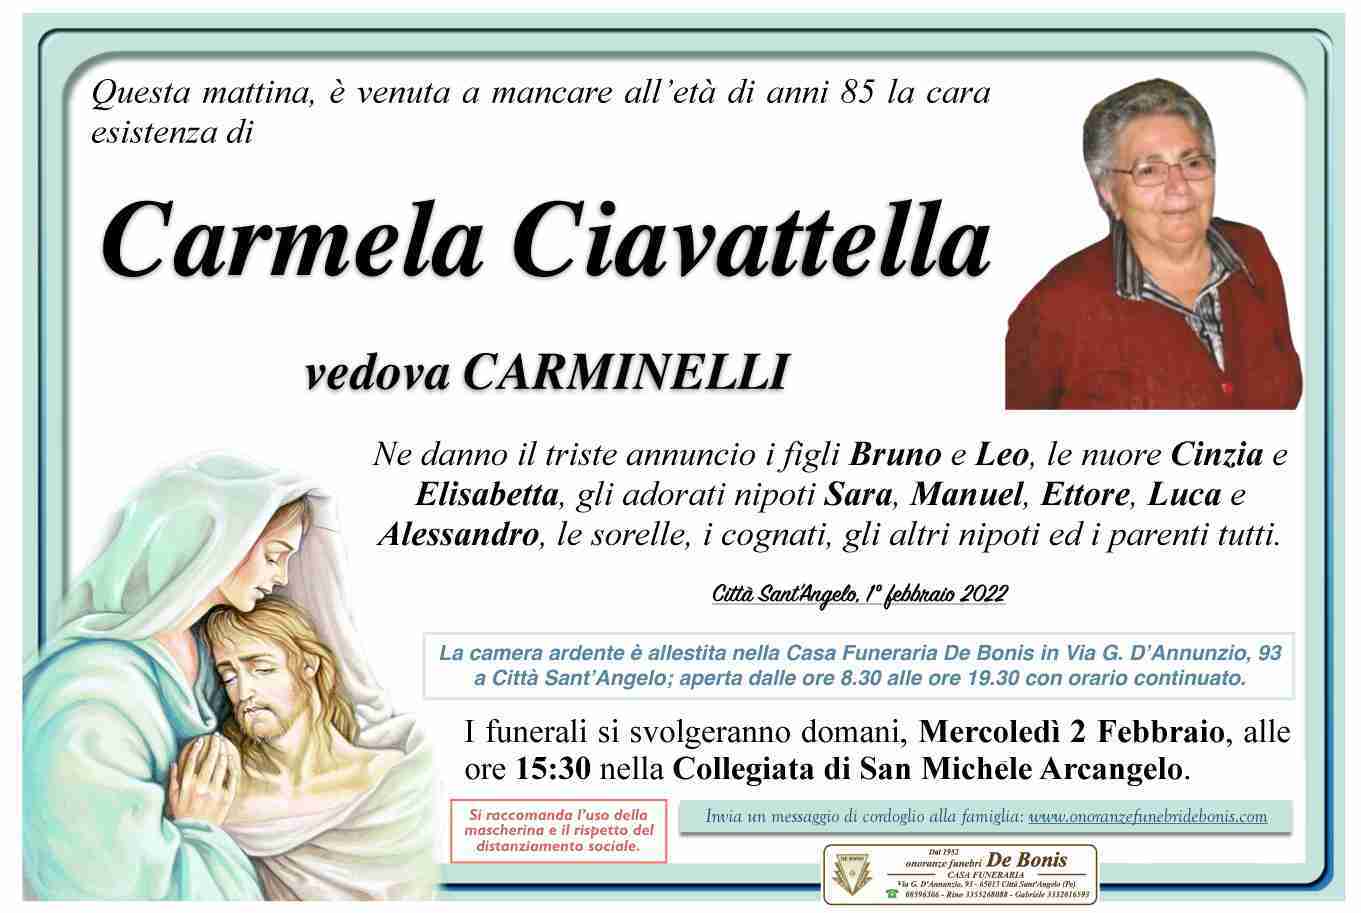 Carmela Ciavattella